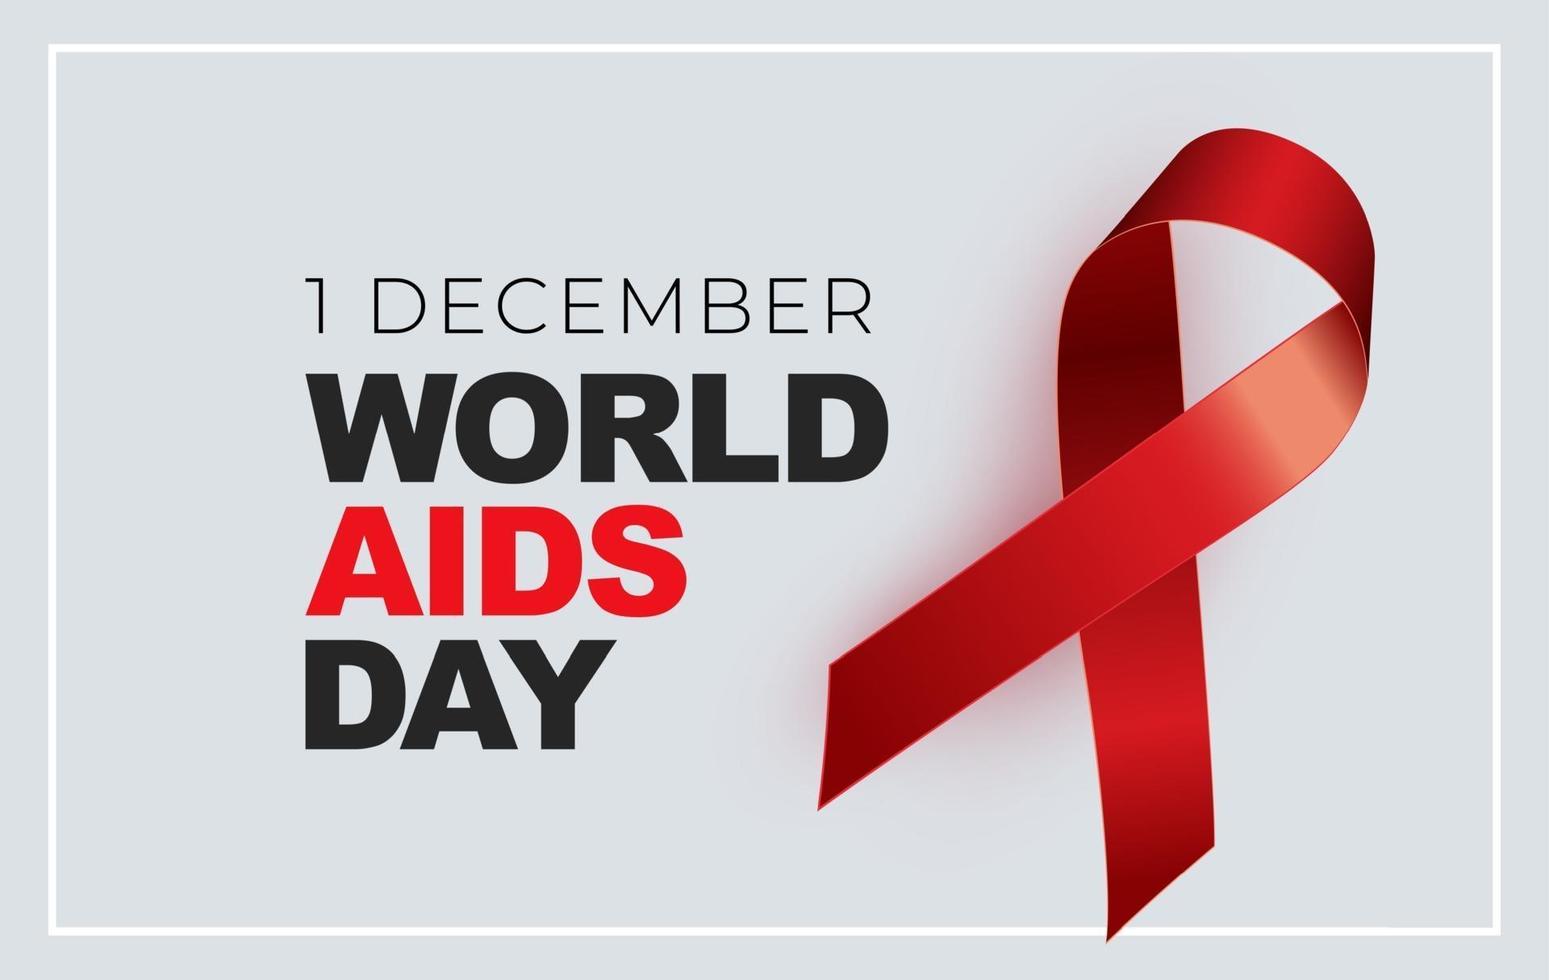 1er décembre concept de la journée mondiale du sida avec signe de ruban rouge vecteur